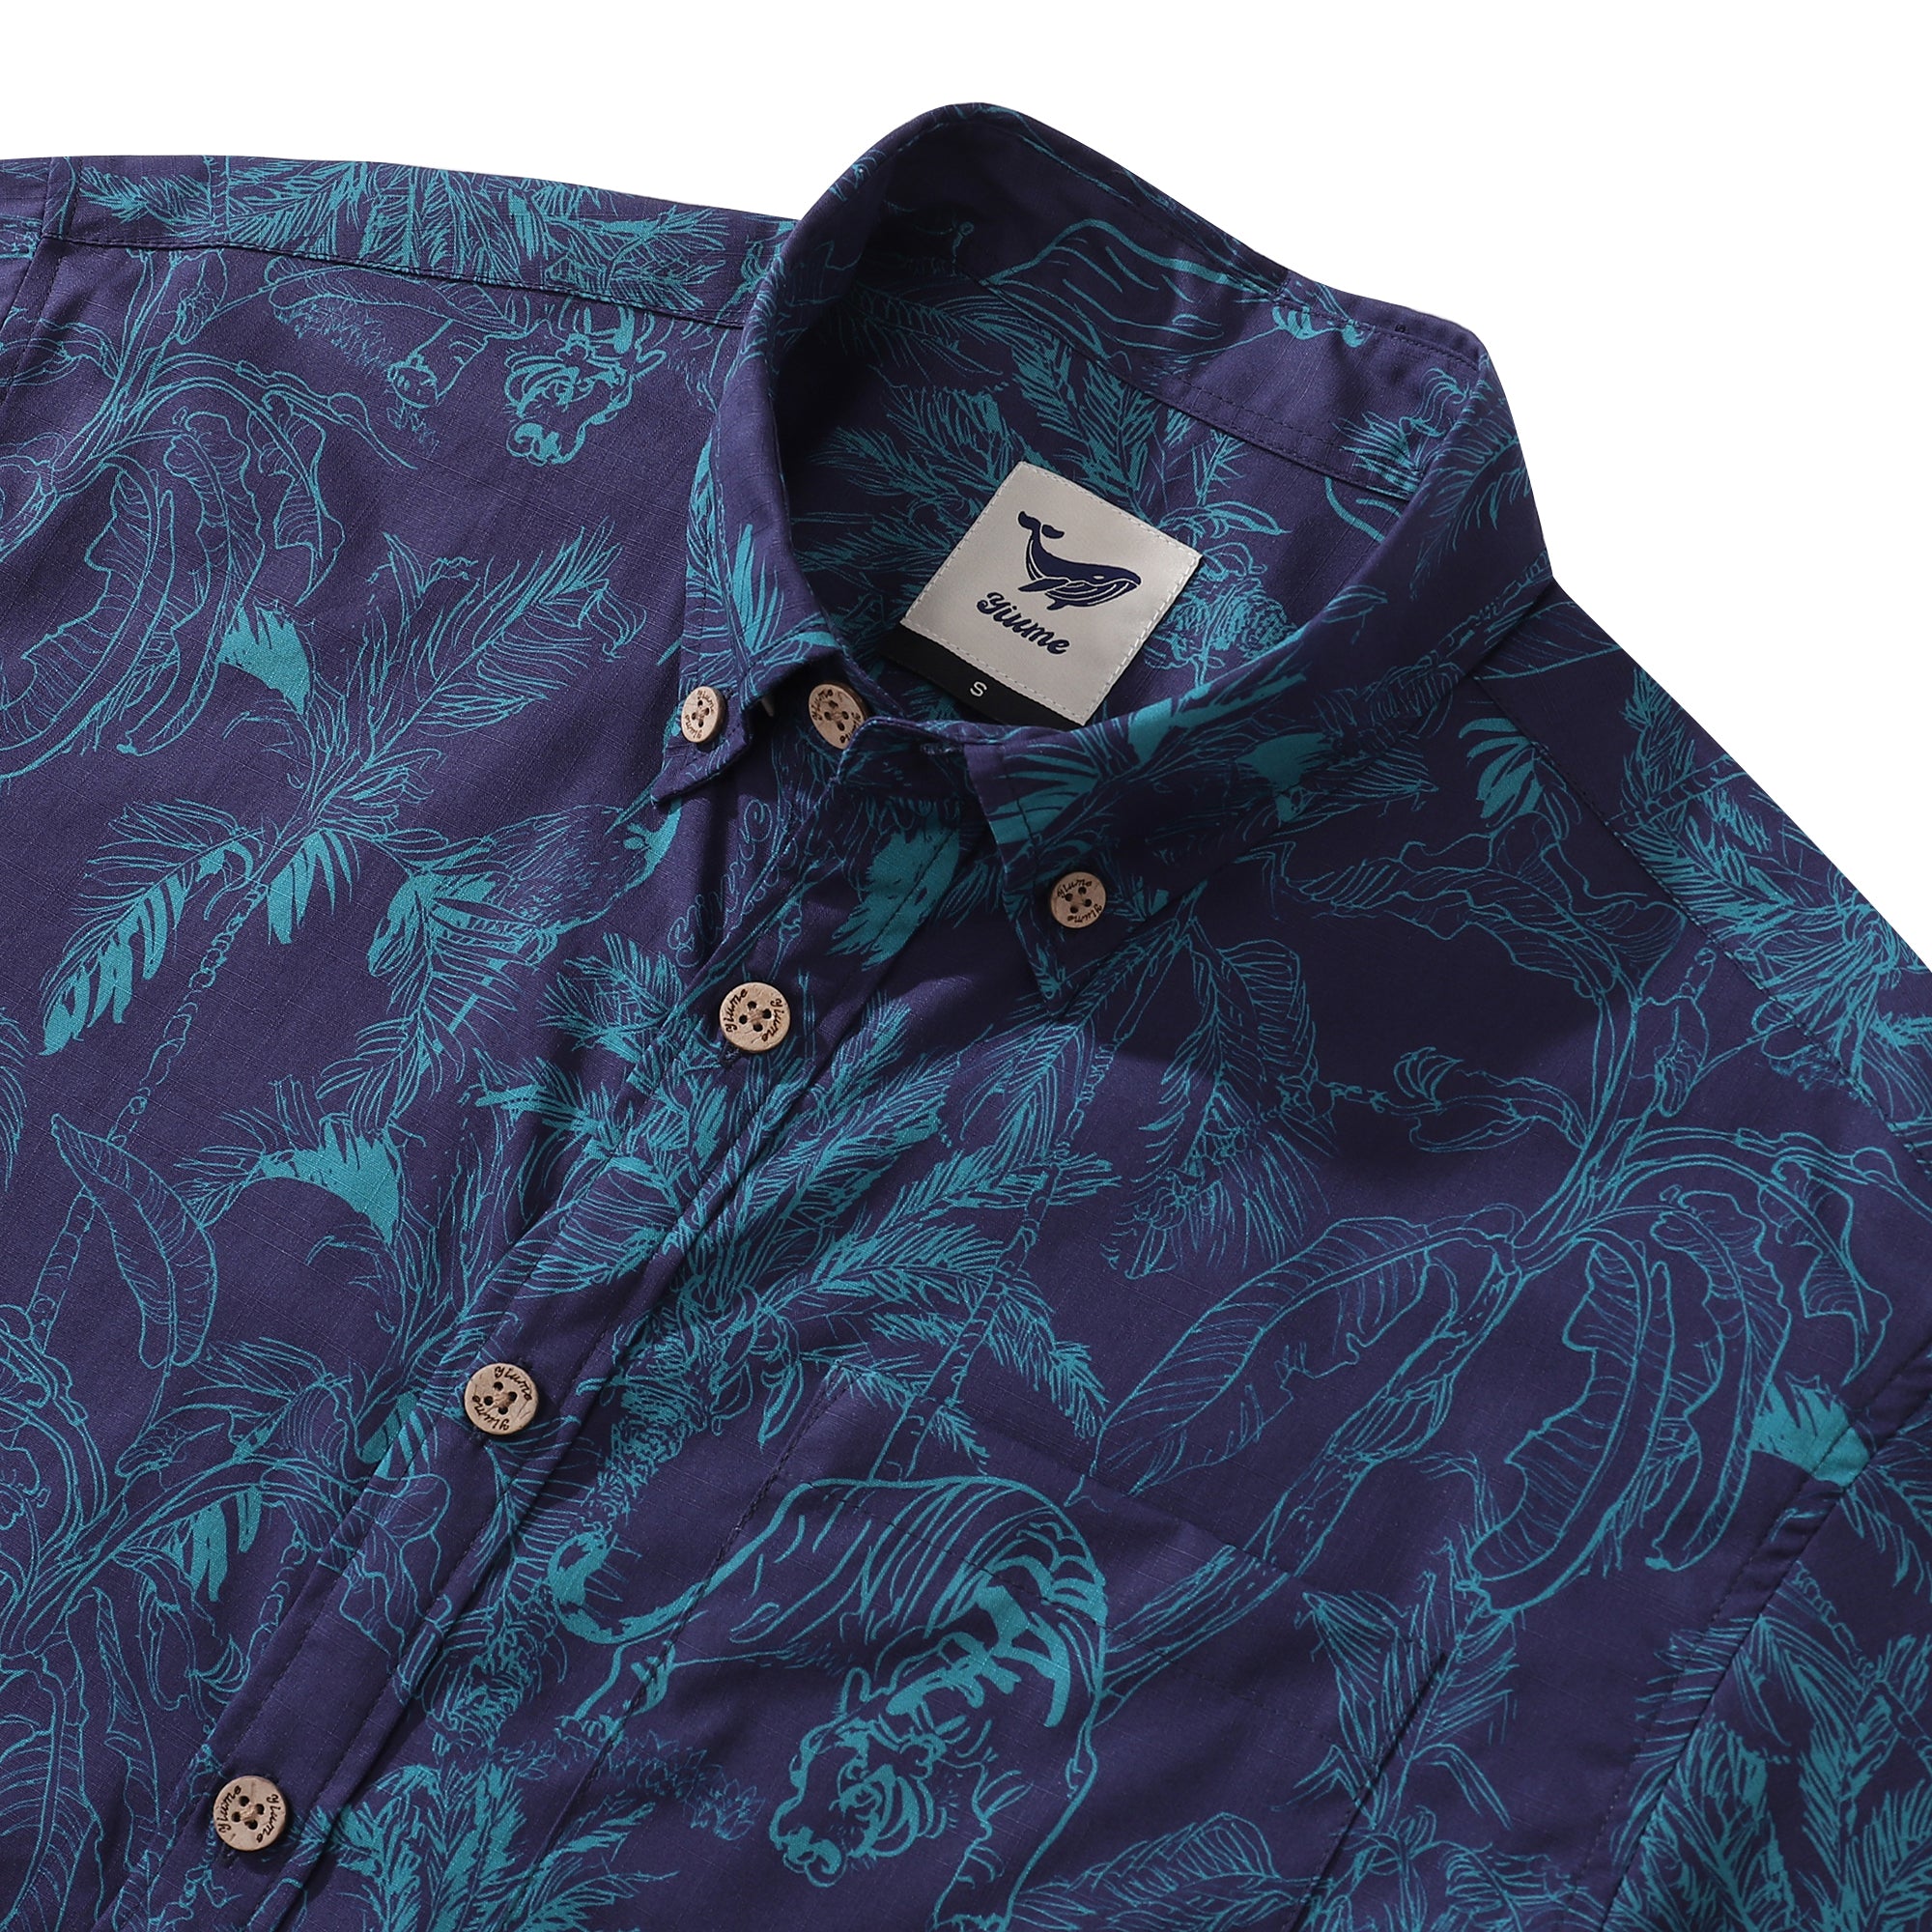 Deep Blue Hawaiian Shirt For Men Tropical Button-down Shirt Short Sleeve 100% Cotton Shirt